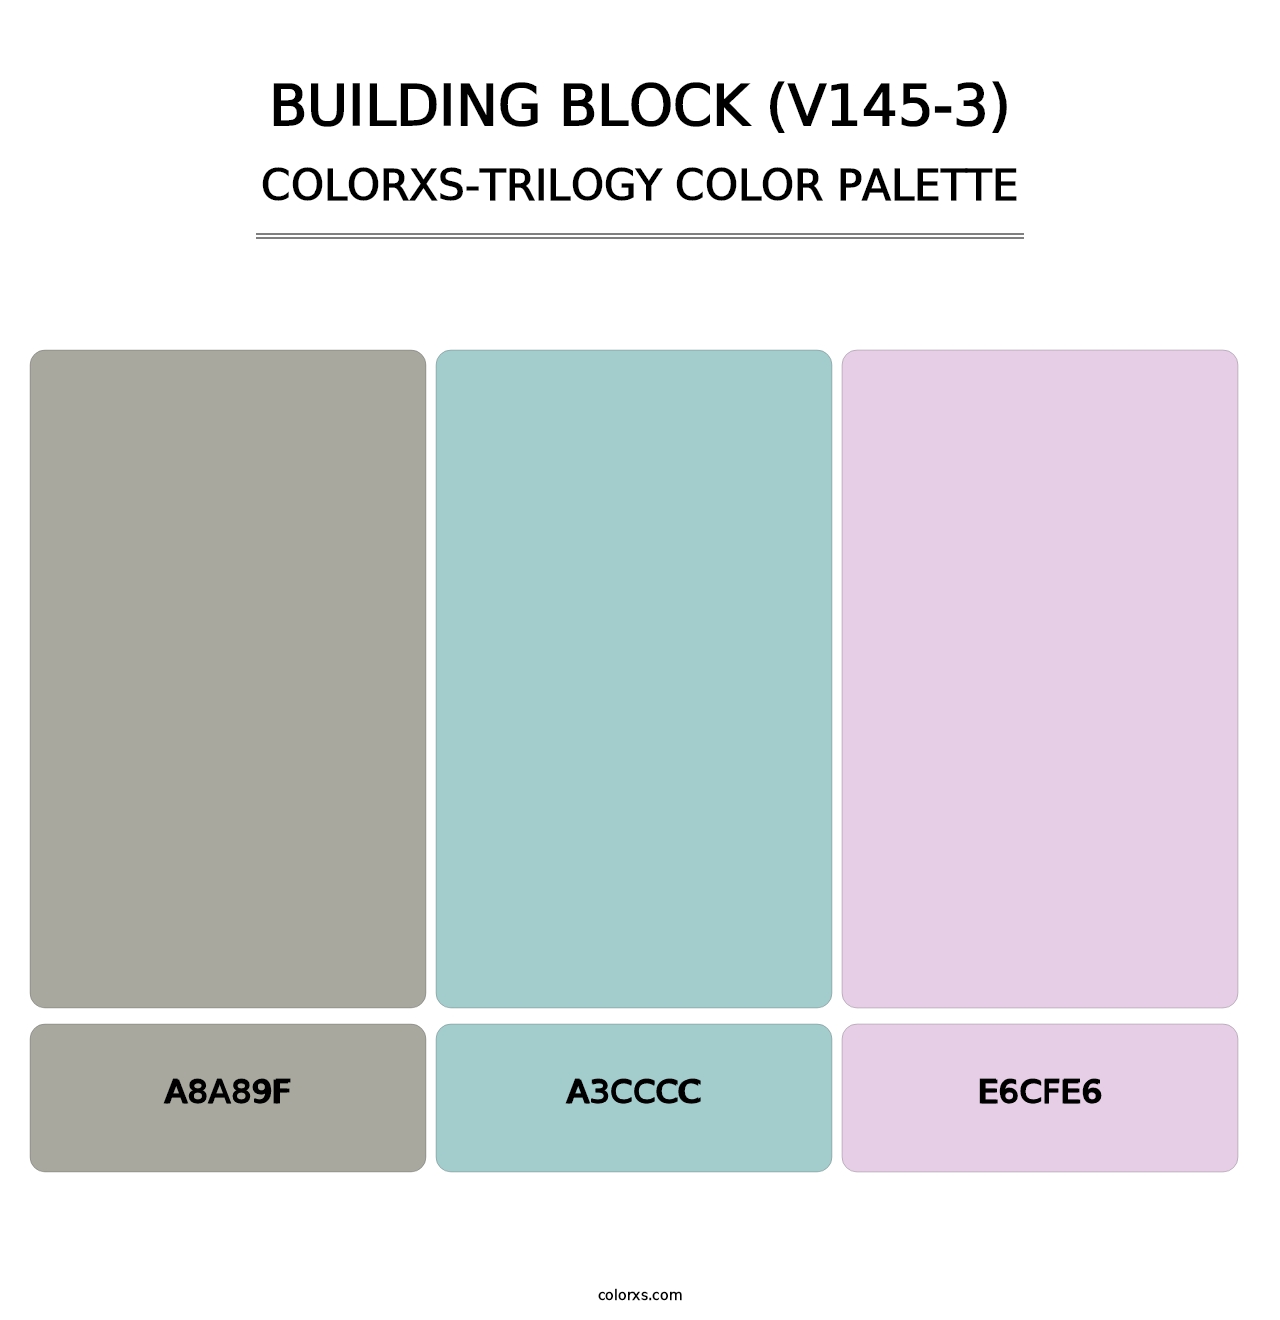 Building Block (V145-3) - Colorxs Trilogy Palette